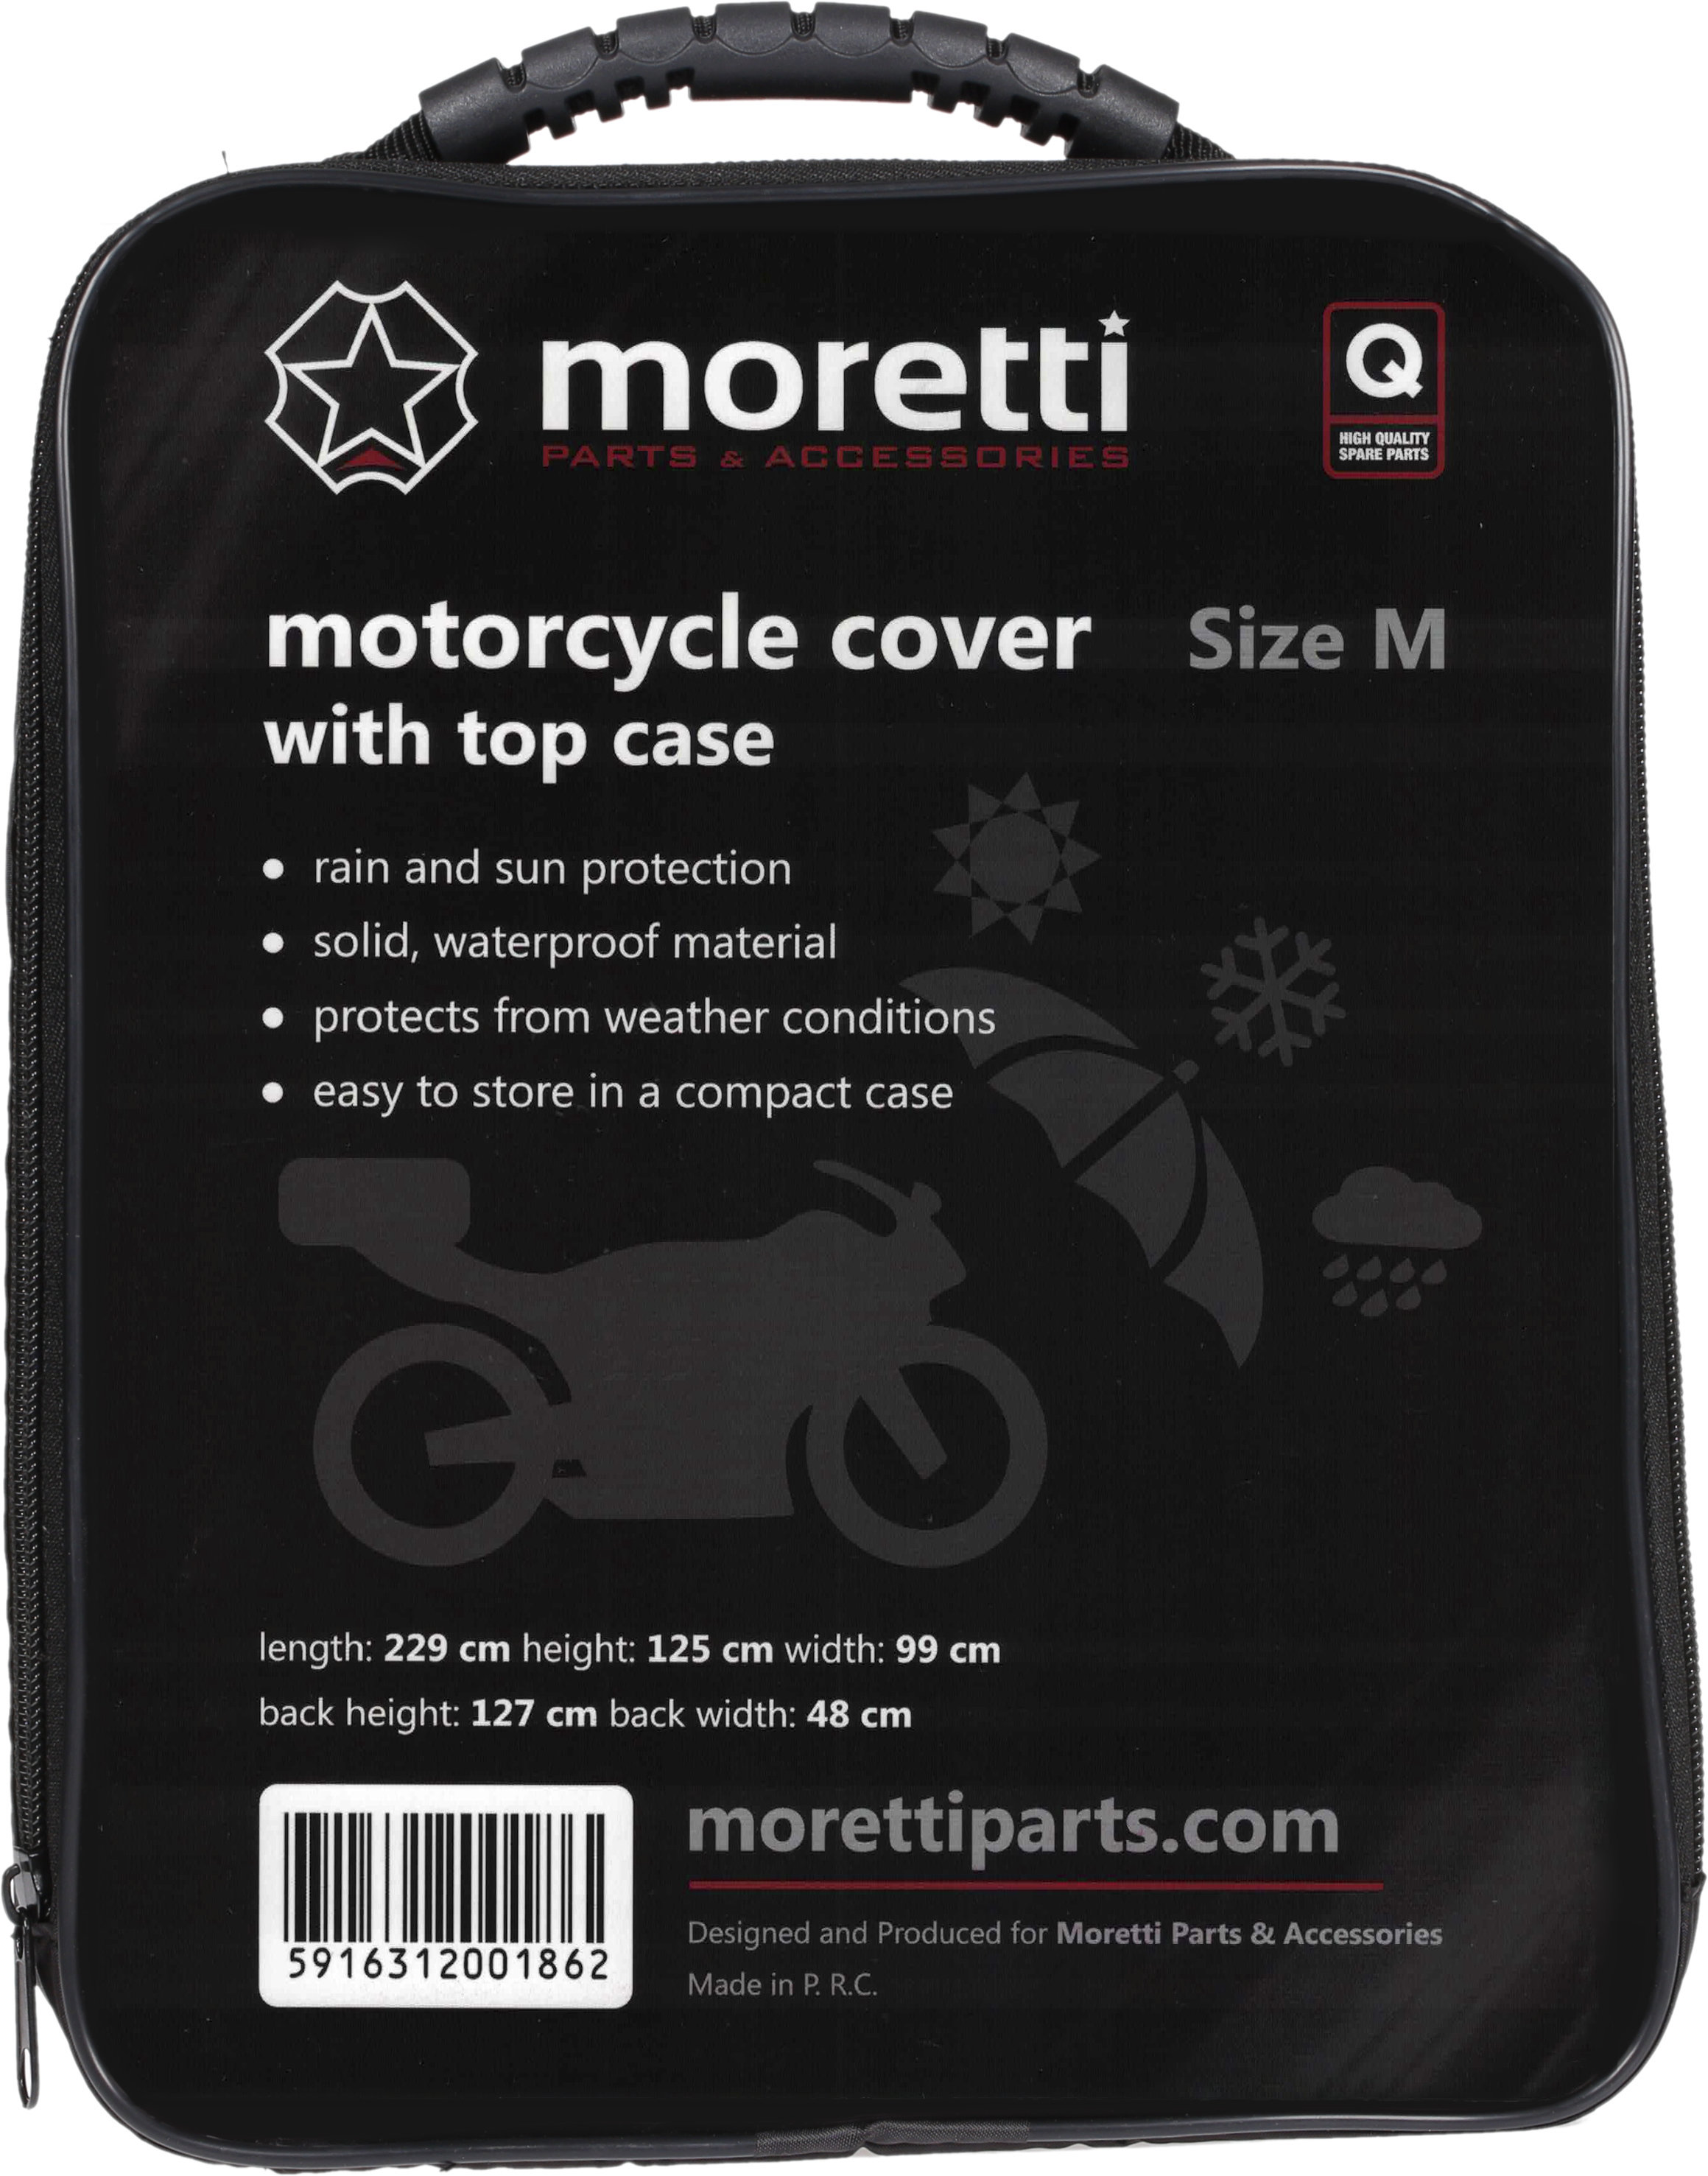 Pokrowiec Motocyklowy Moretti M z Kufrem